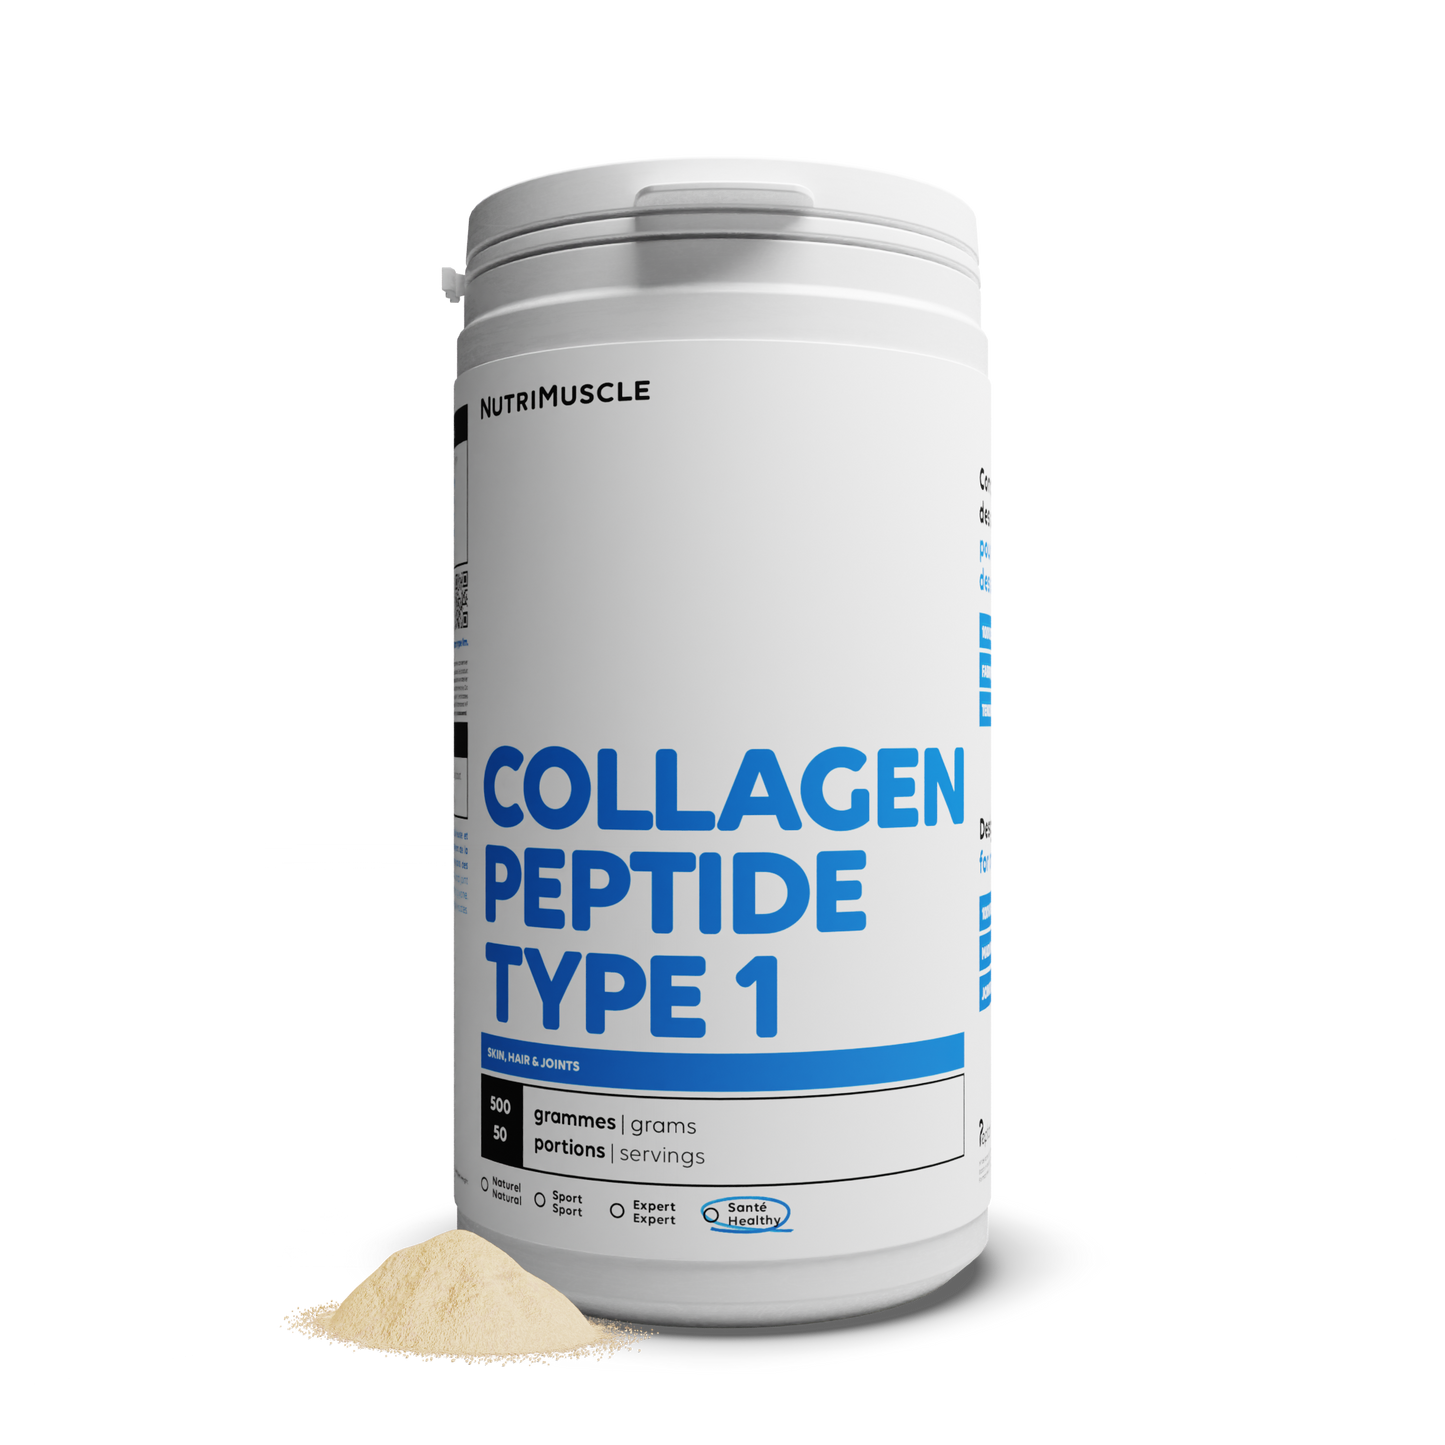 Collagène Peptides Peptan® 1 en poudre